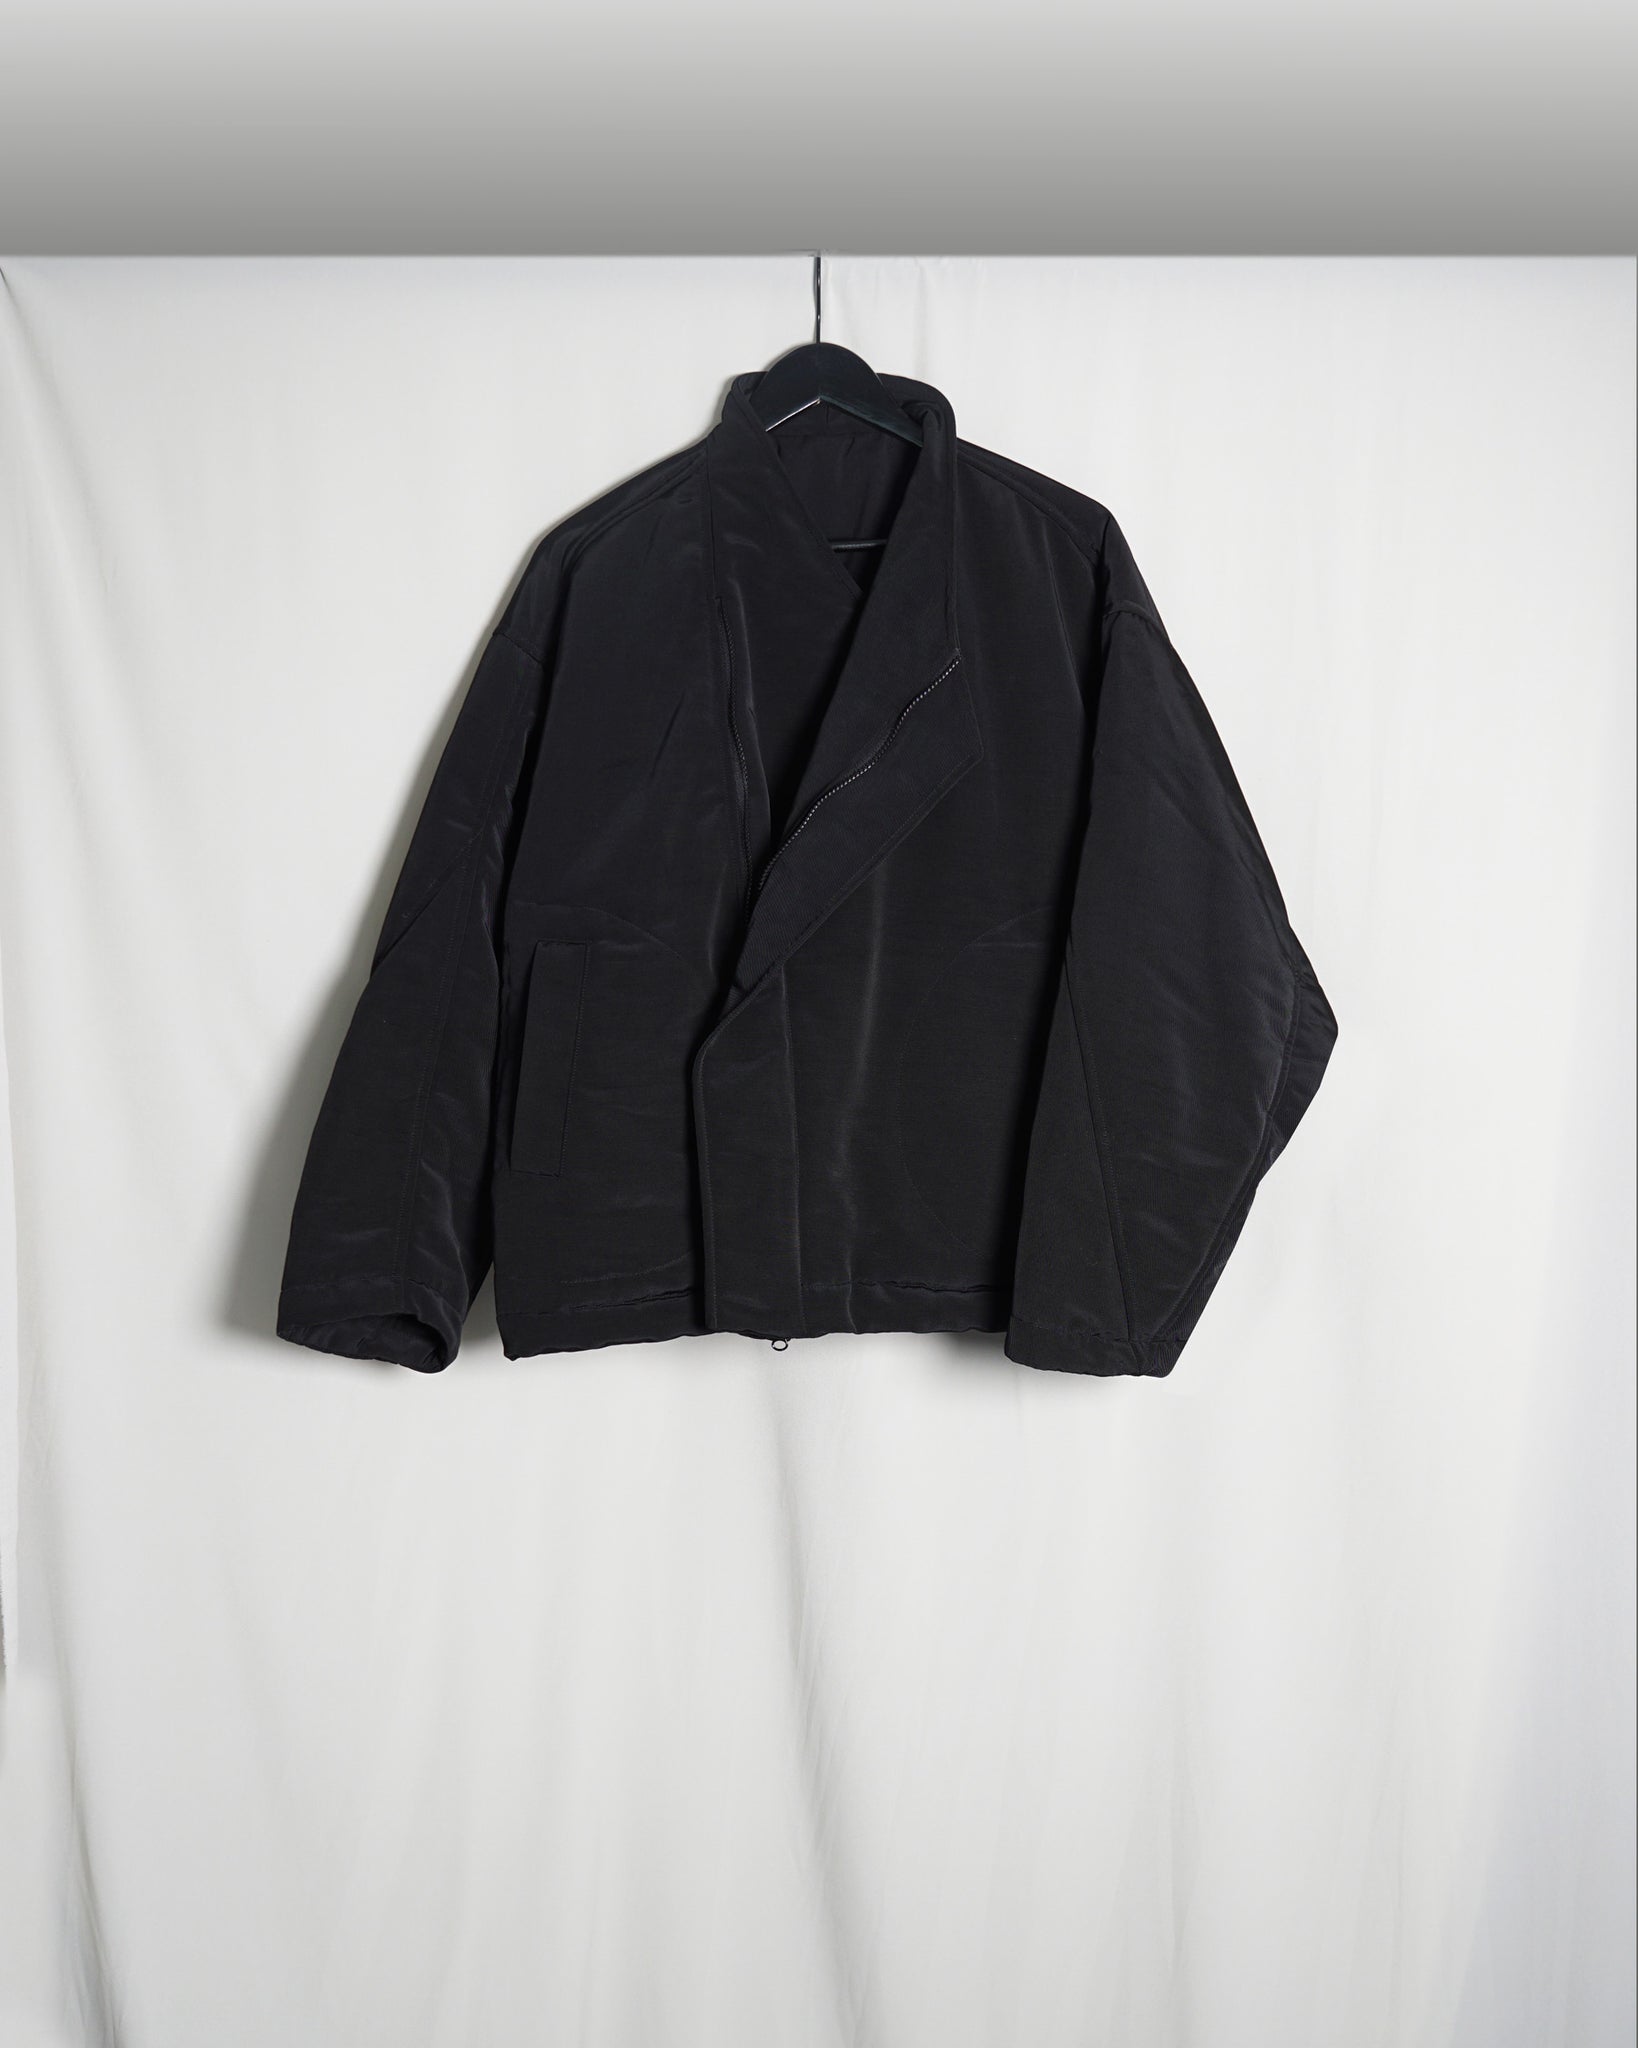 ROSEN Shibui Jacket in Padded Moiré Sz 3-4